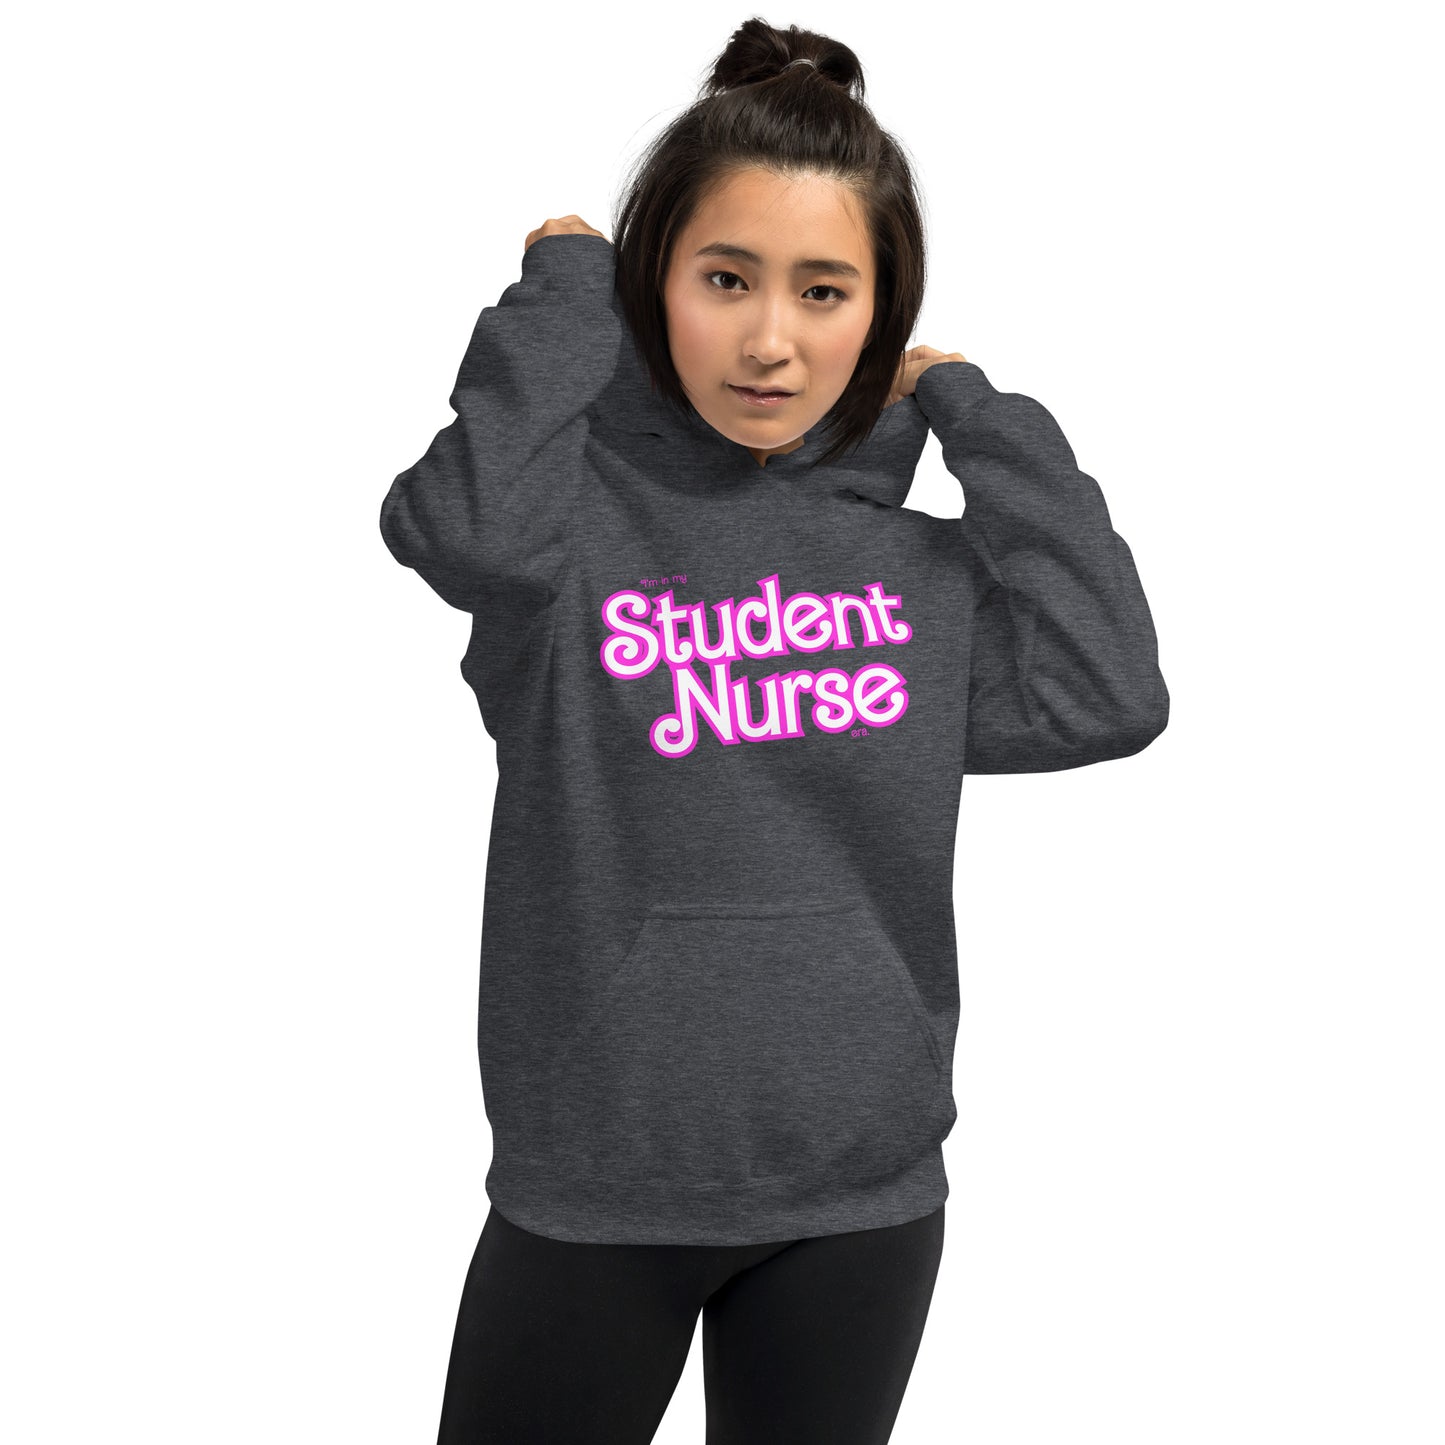 Student Nurse Era Hoodie